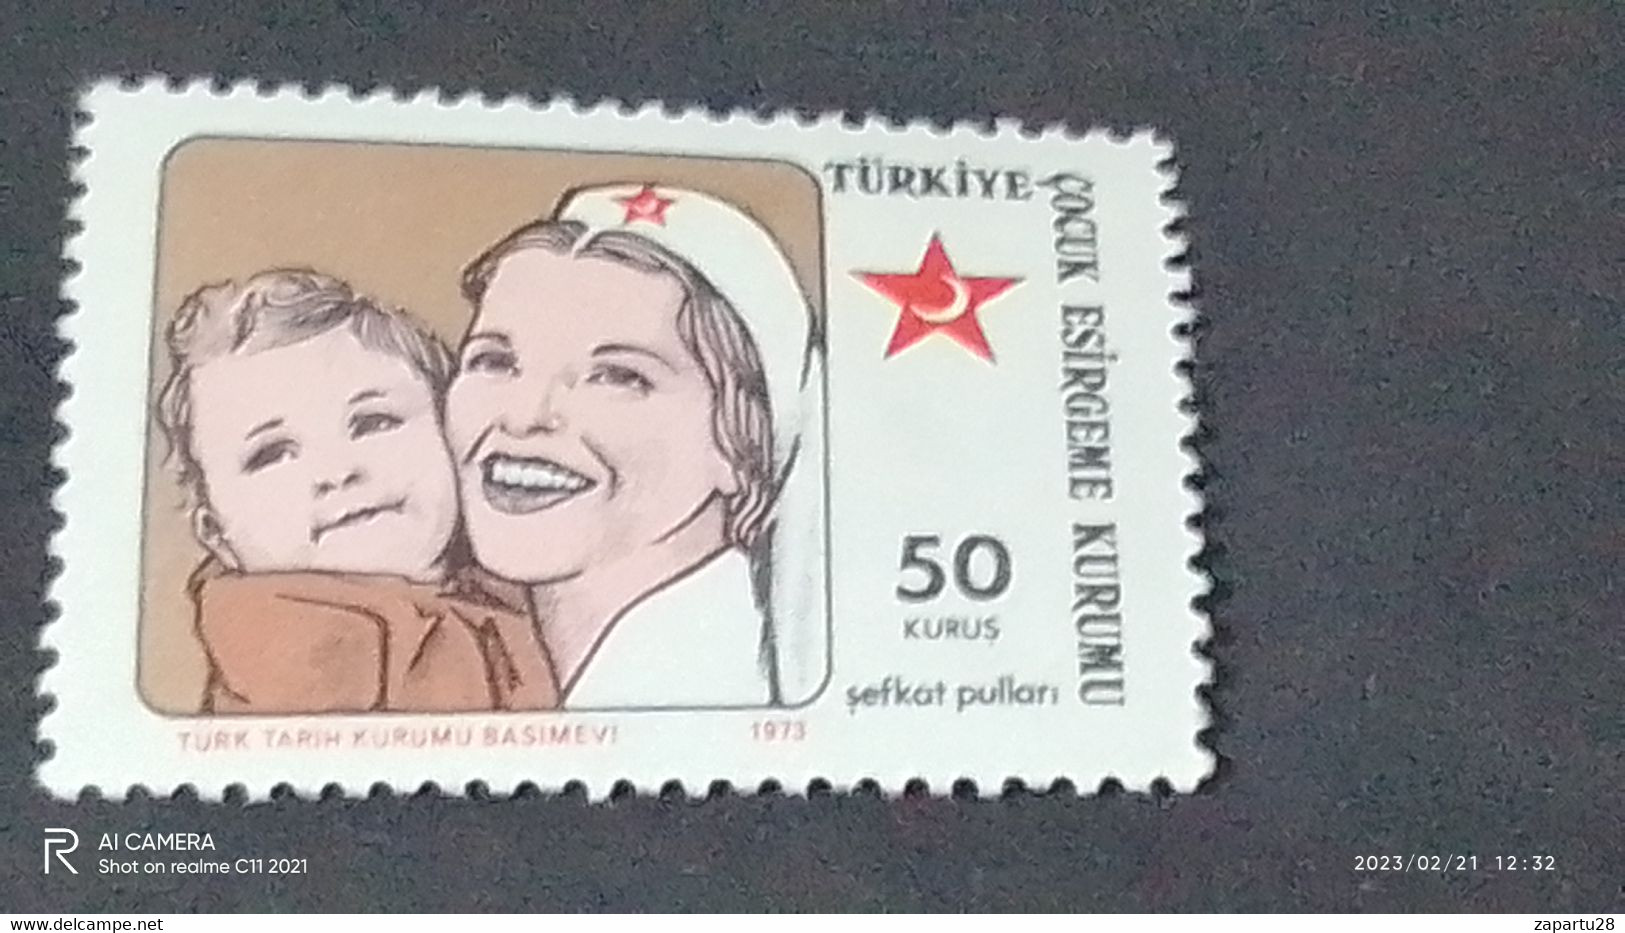 TÜRKEY--YARDIM PULLARI- ÇOCUK ESİRGEME 50K  DAMGASIZ - Charity Stamps